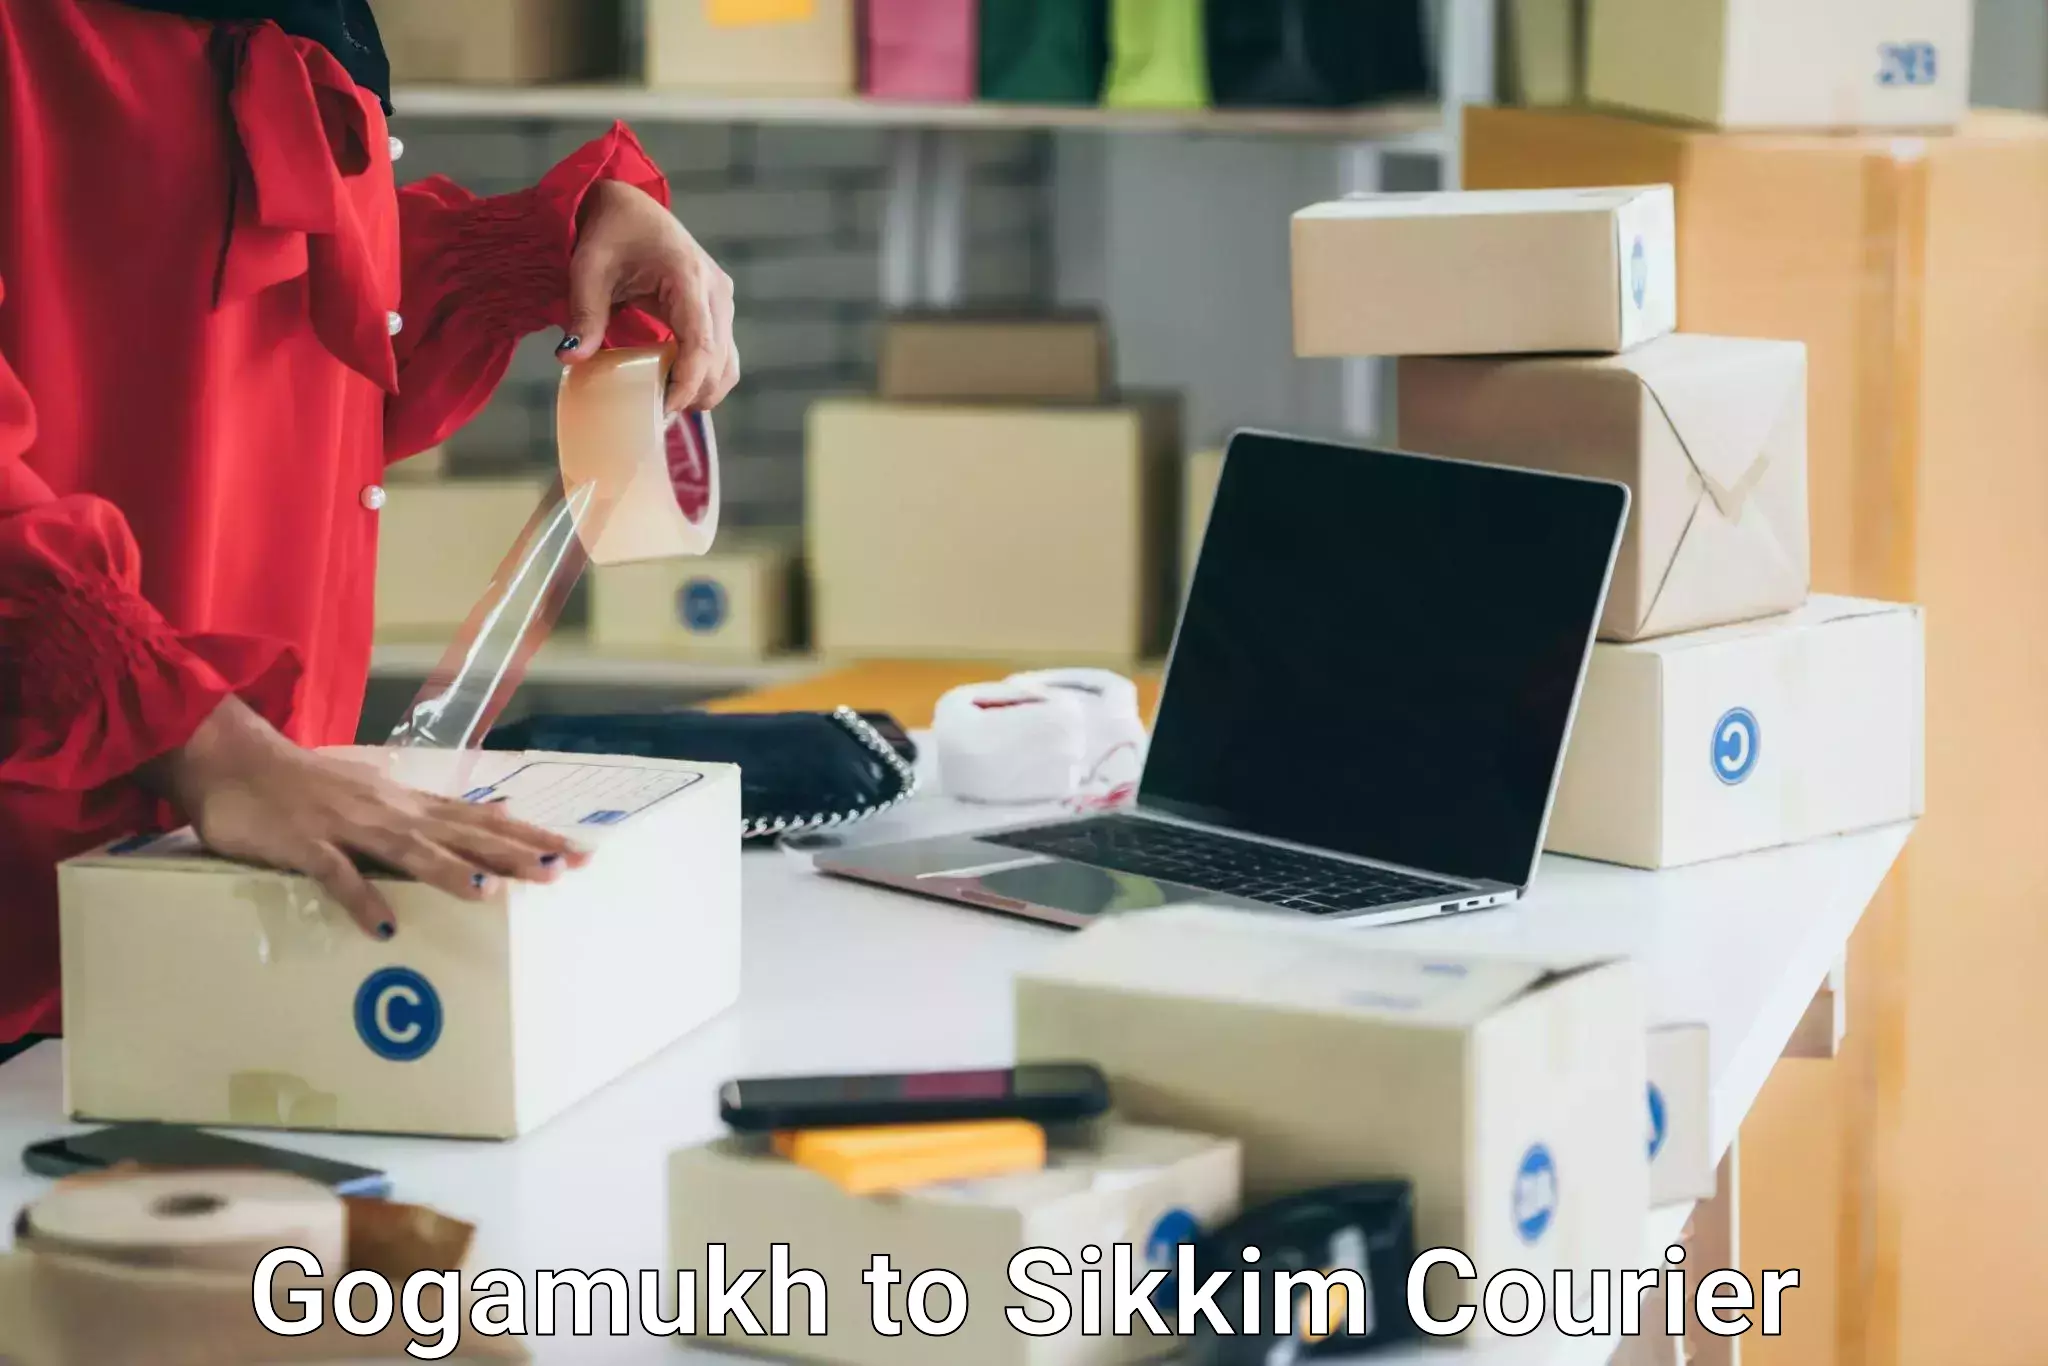 Specialized moving company Gogamukh to Sikkim